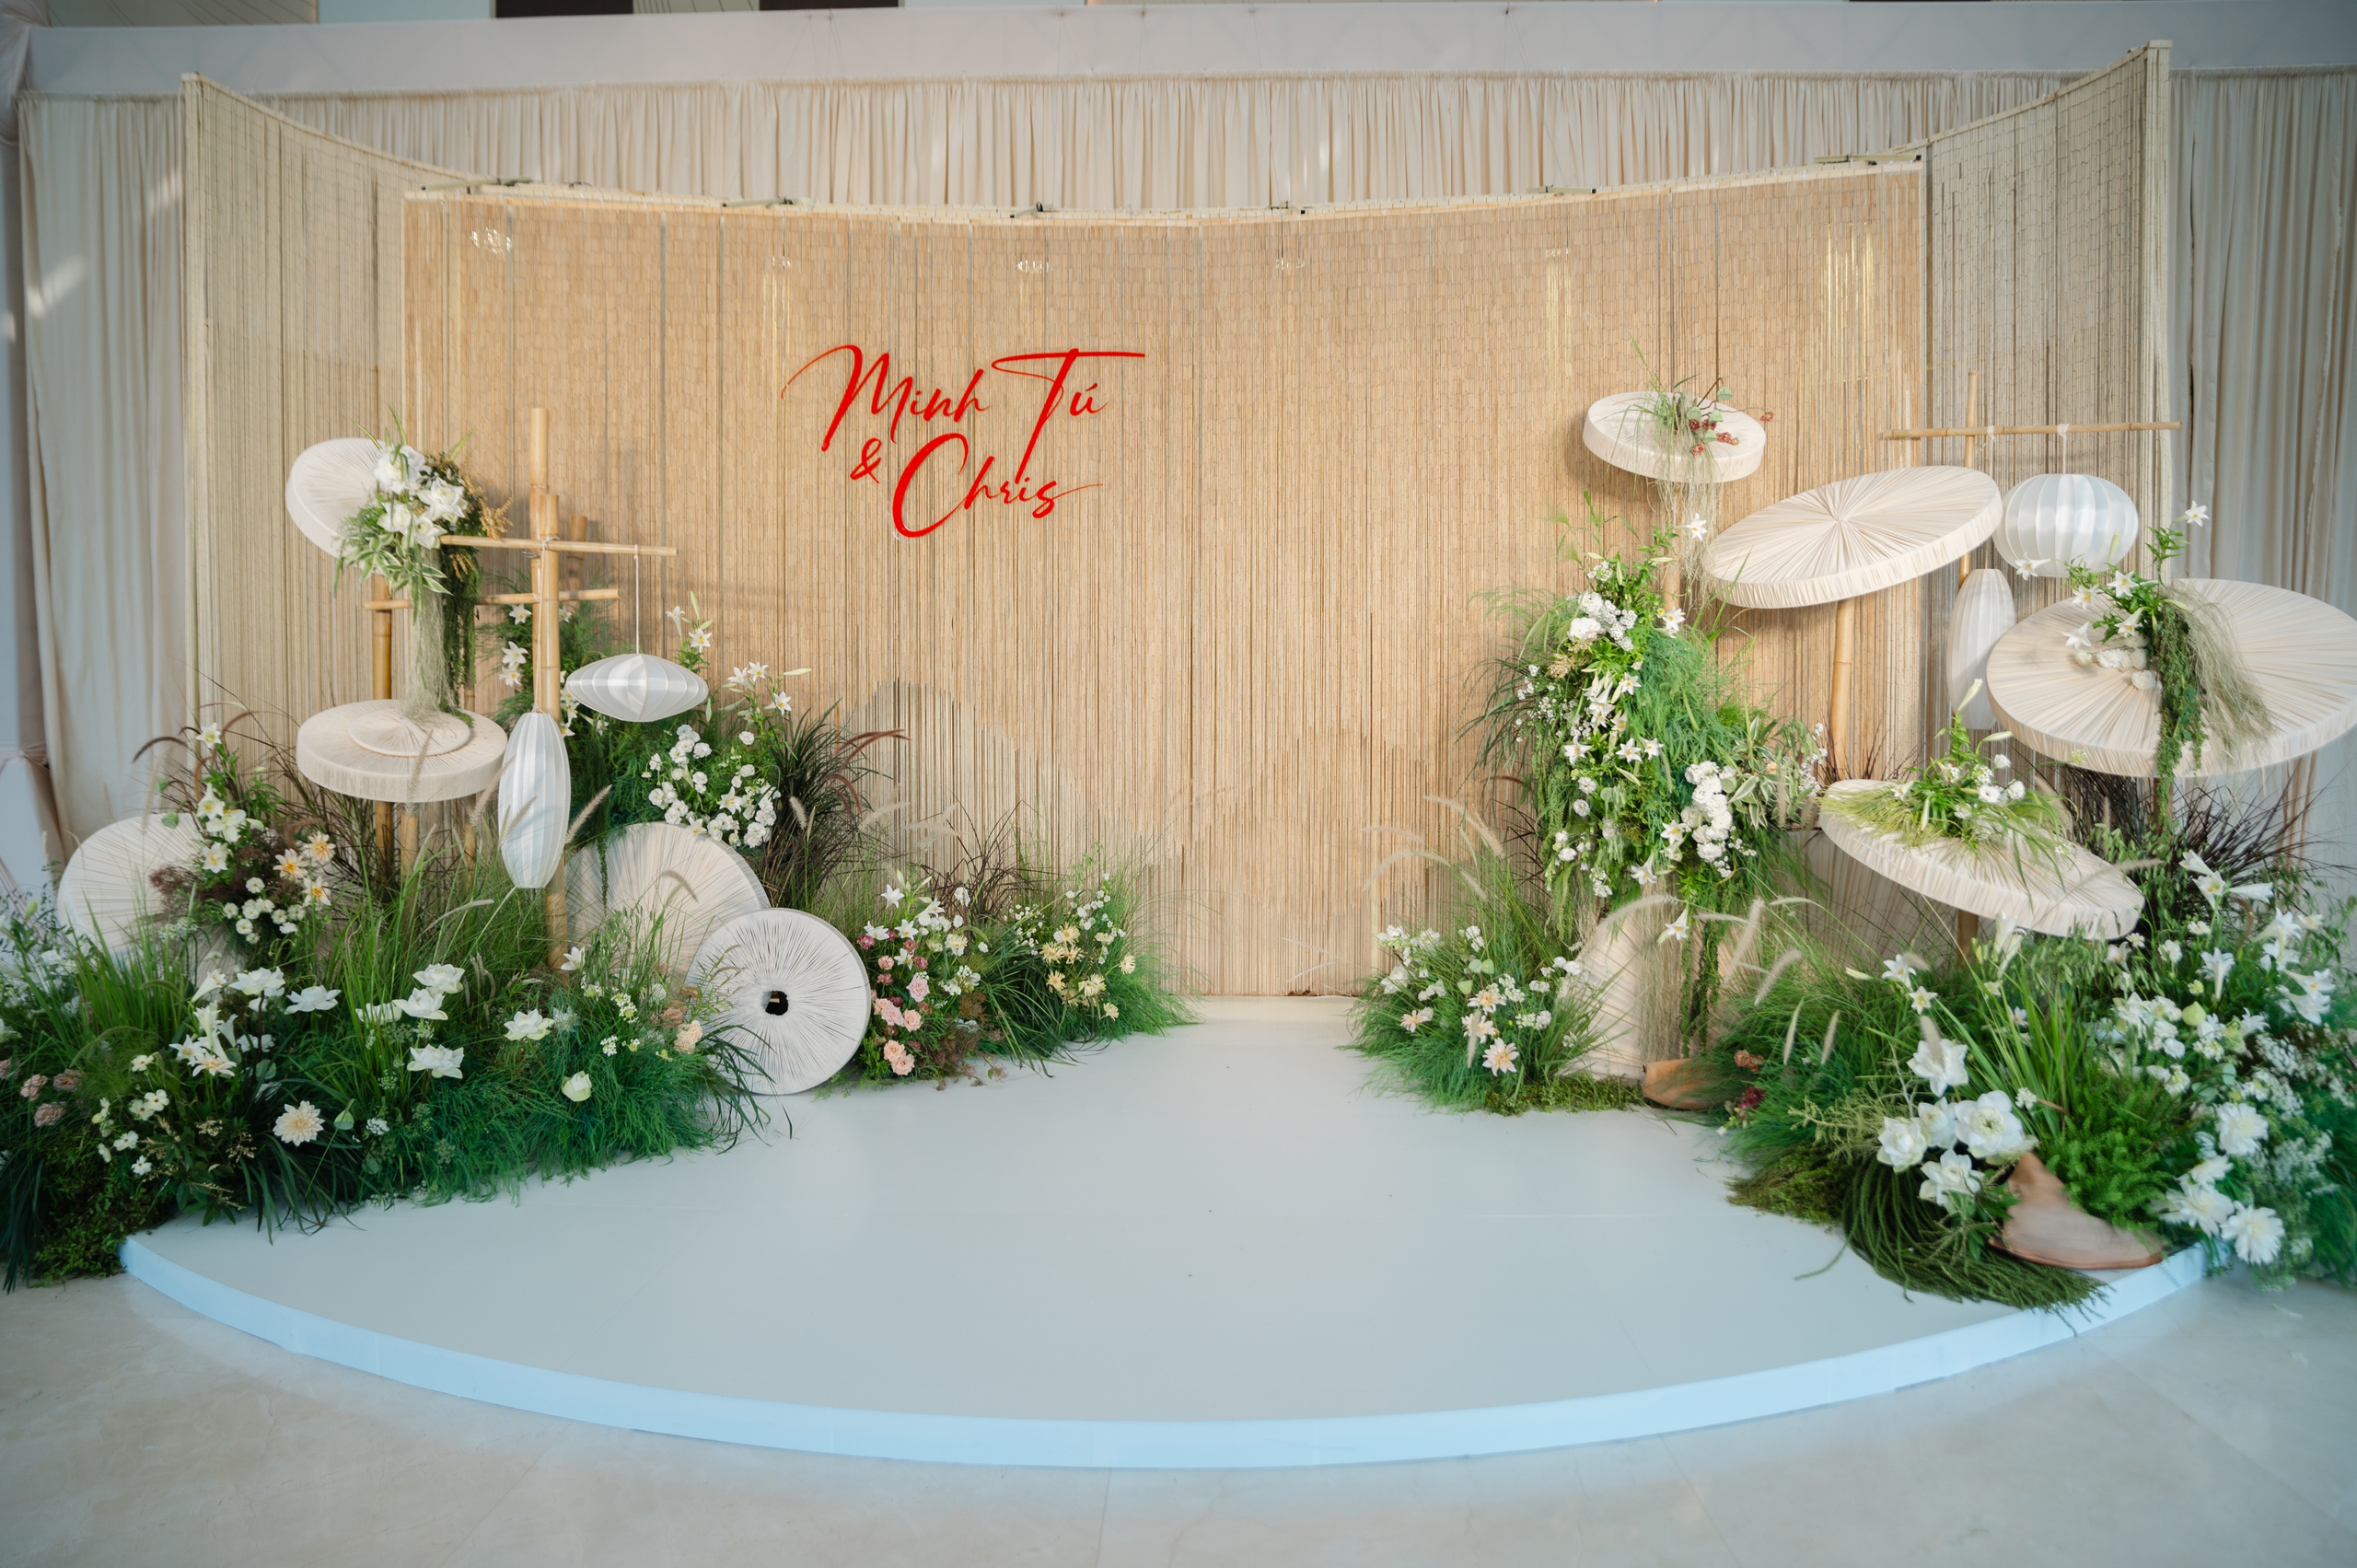 Đám cưới Minh Tú và chồng Tây gây "choáng" với không gian phủ đầy hoa trắng, đậm chất làng quê Việt- Ảnh 7.